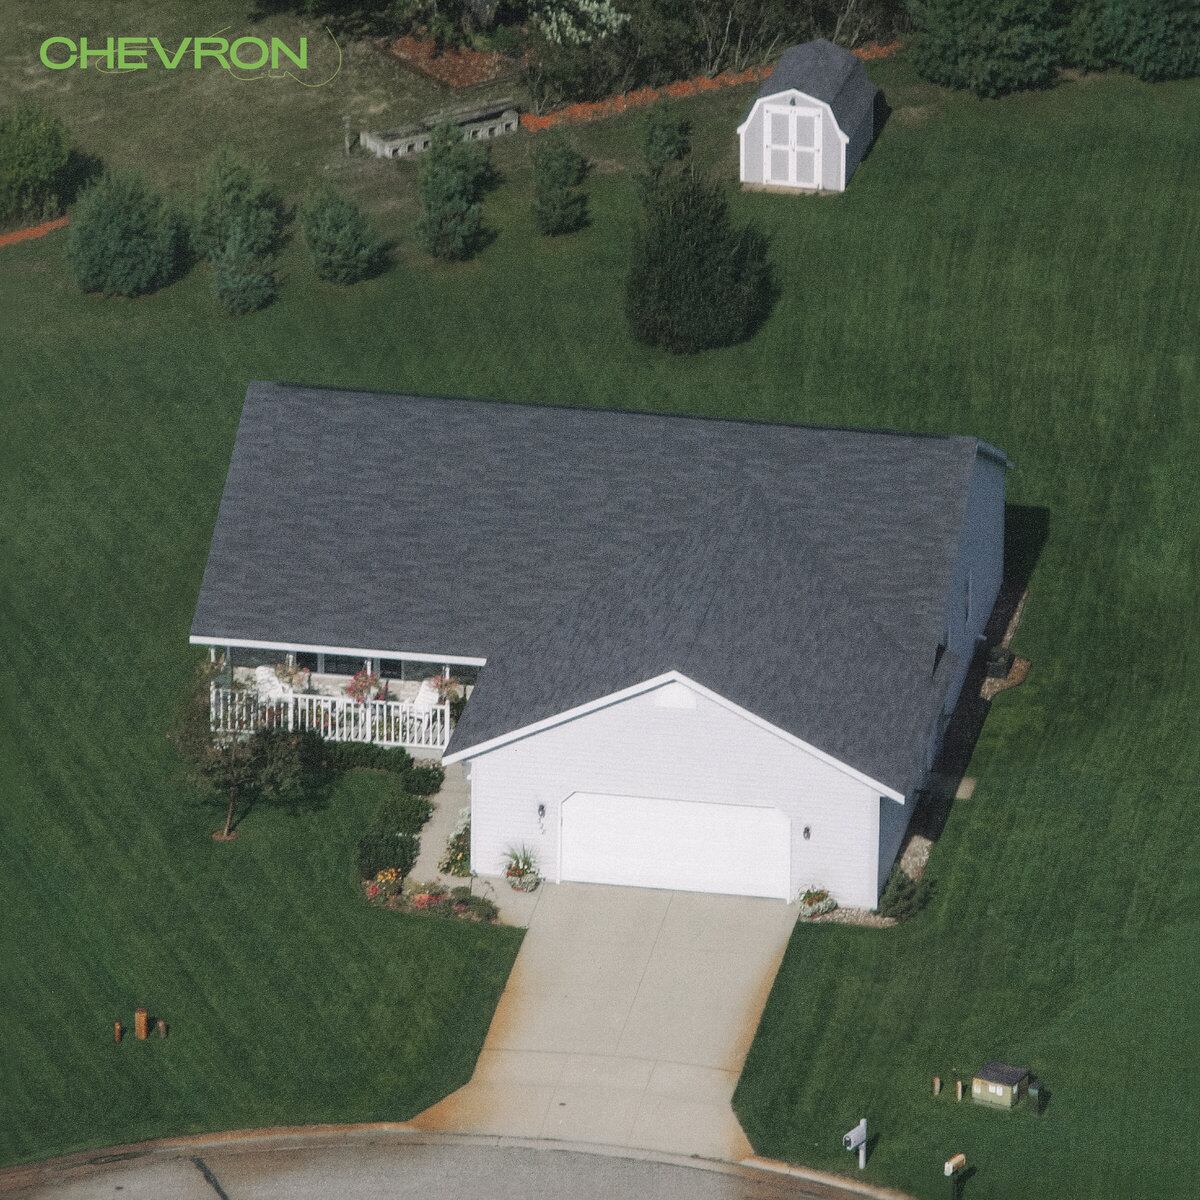 The Lipschitz / Chevron（Ltd LP）